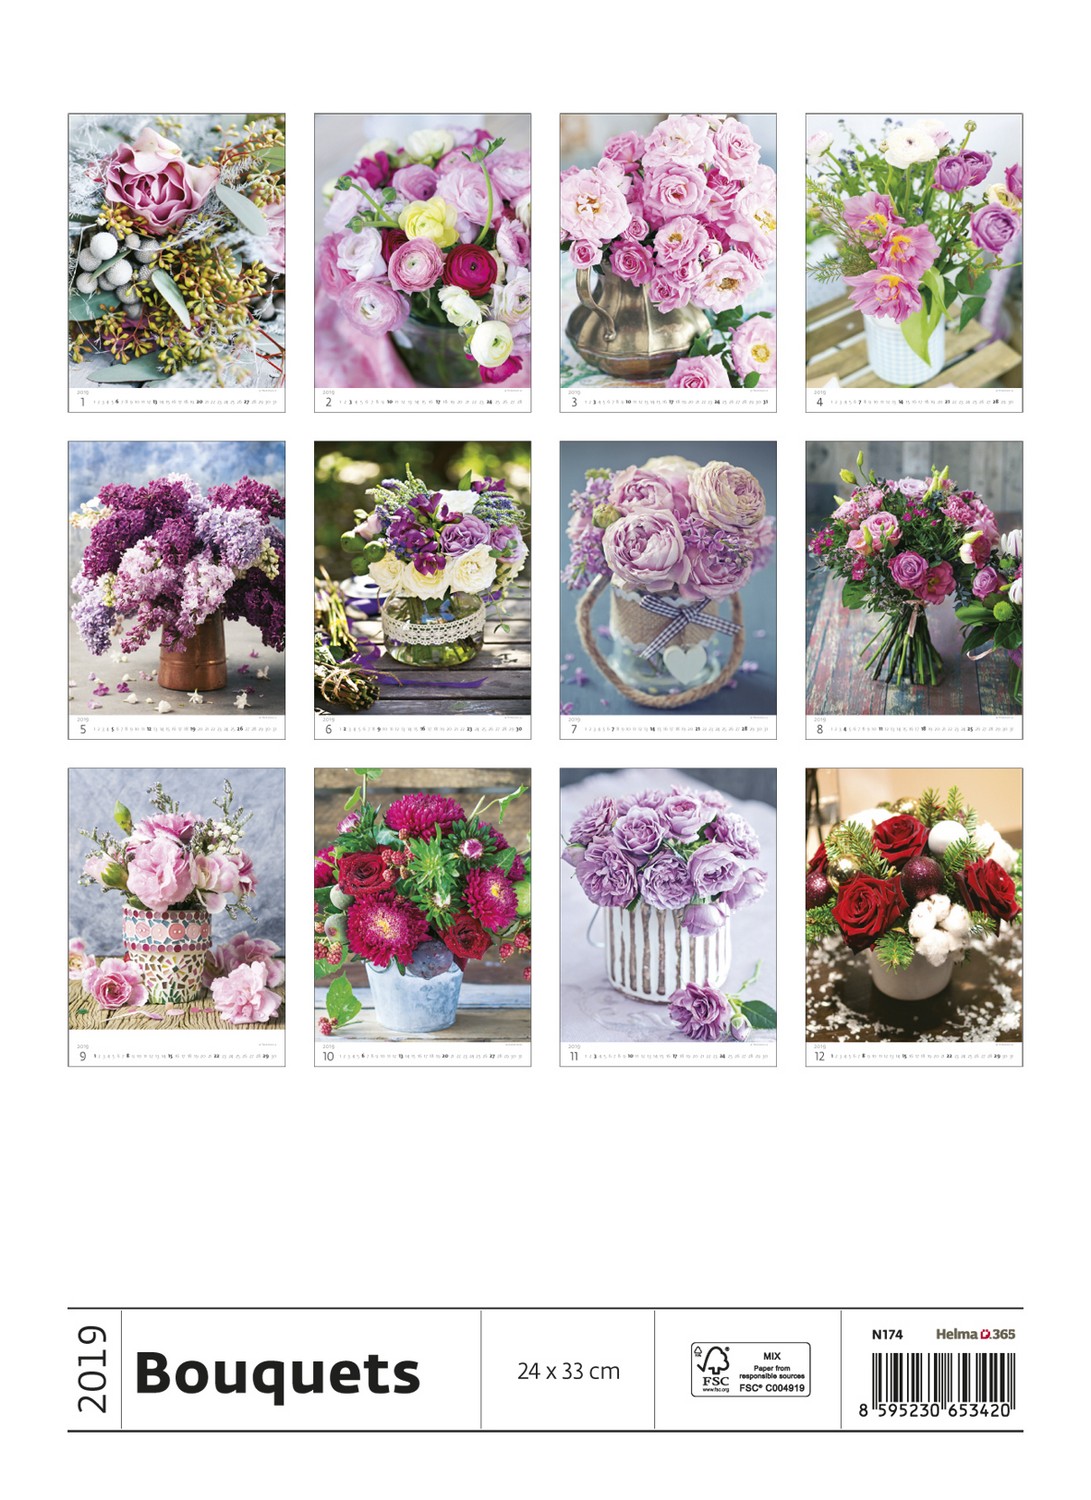 Bouquets Calendar 2019 Flower Calendars